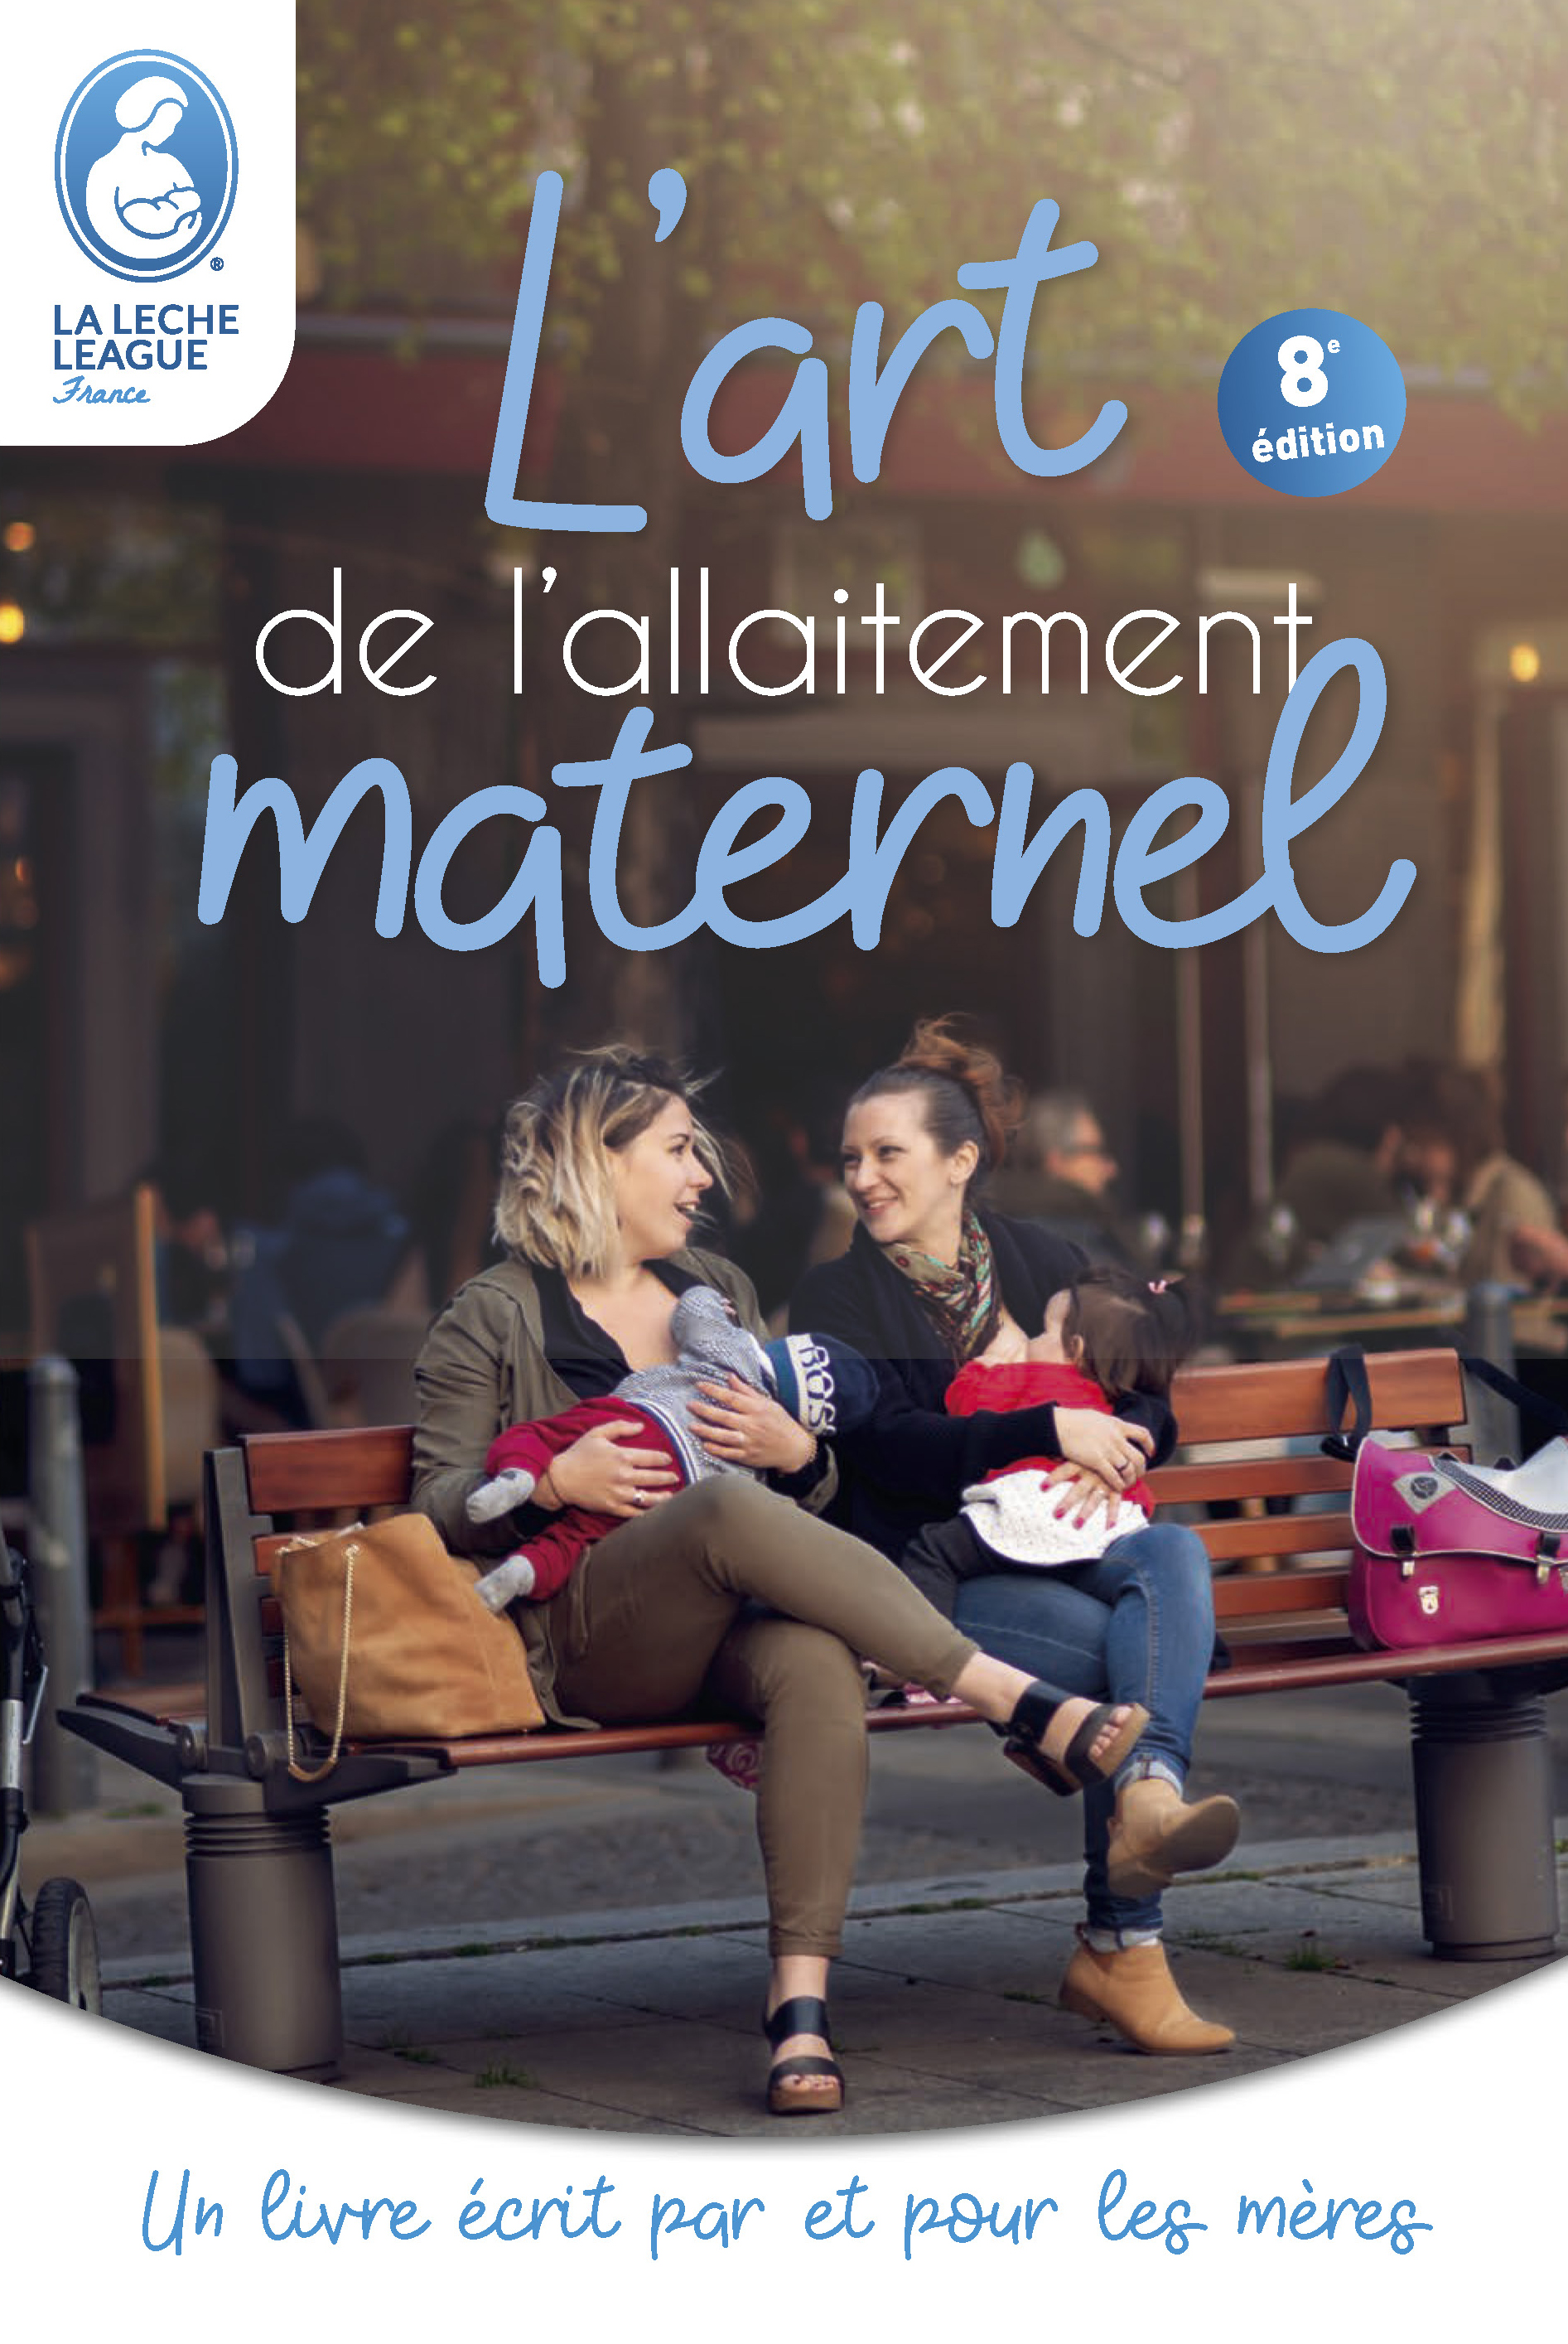 La Leche League Belgique - Une étude dévoile l'effet bénéfique longue durée  de l'allaitement maternel sur la digestion de l'enfant qui a été allaité.  En effet, l'allaitement pendant au moins 7 mois